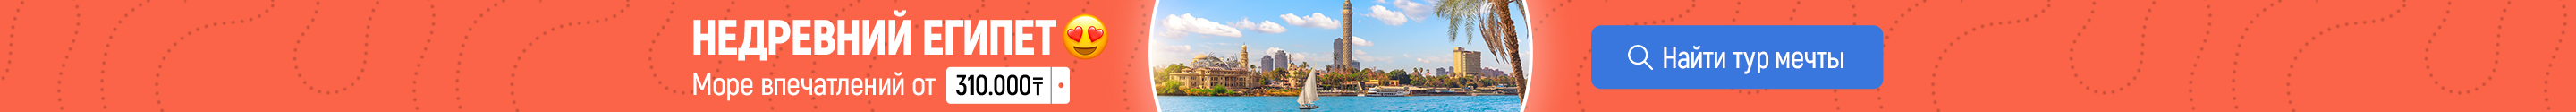 Бронируйте туры в Египет